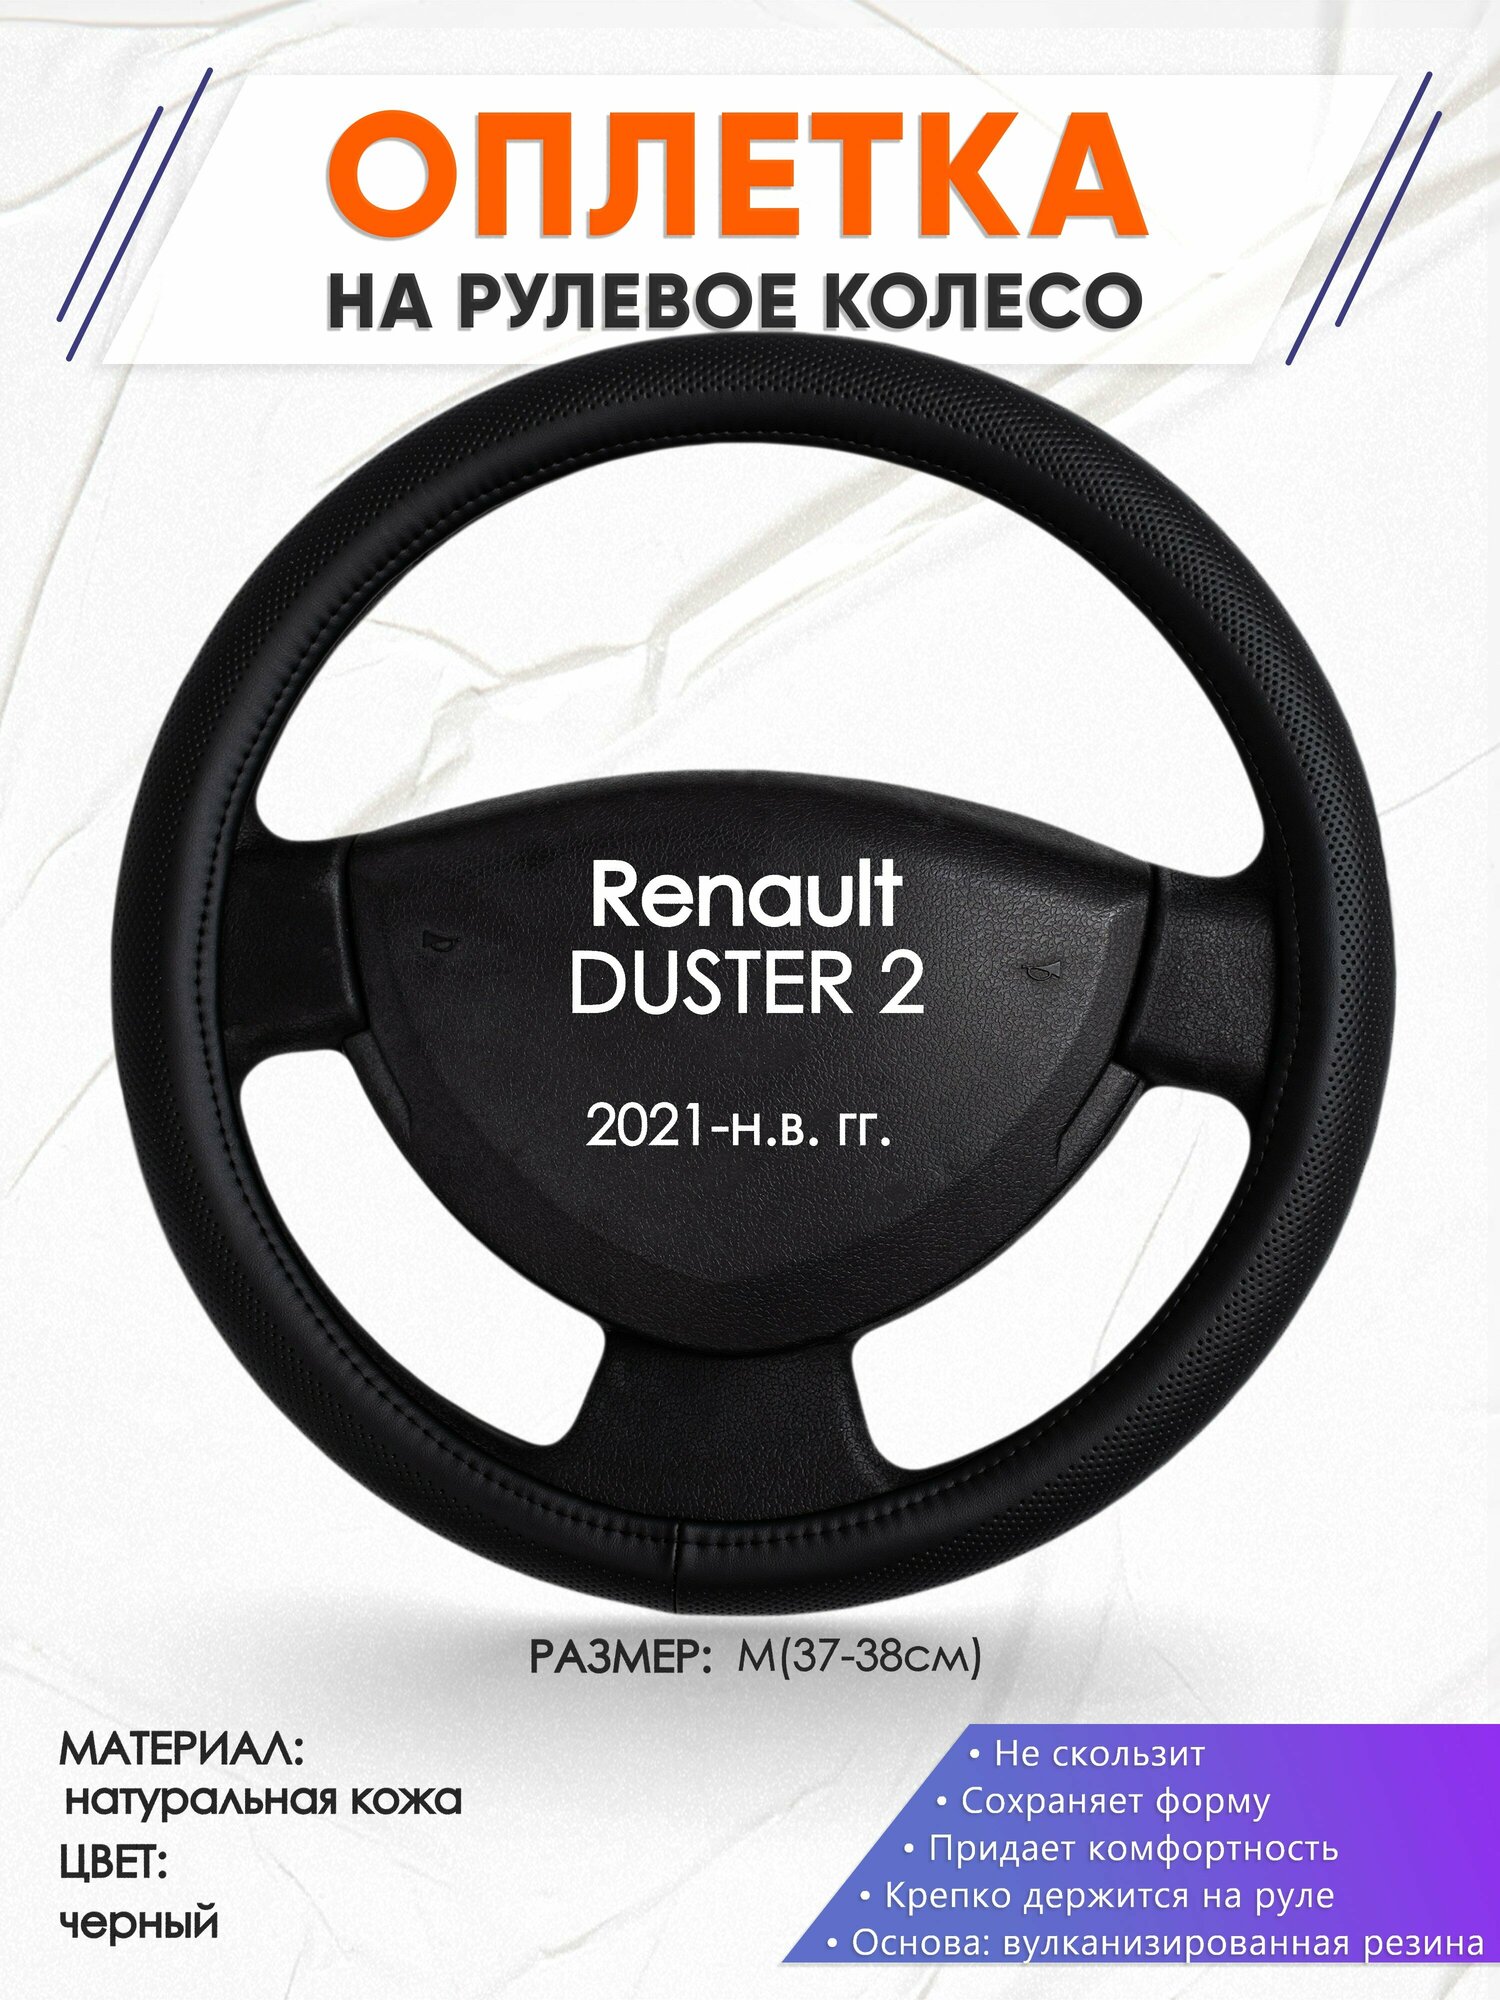 Оплетка наруль для Renault DUSTER 2(Рено Дастер 2) 2021-н. в. годов выпуска размер M(37-38см) Натуральная кожа 29